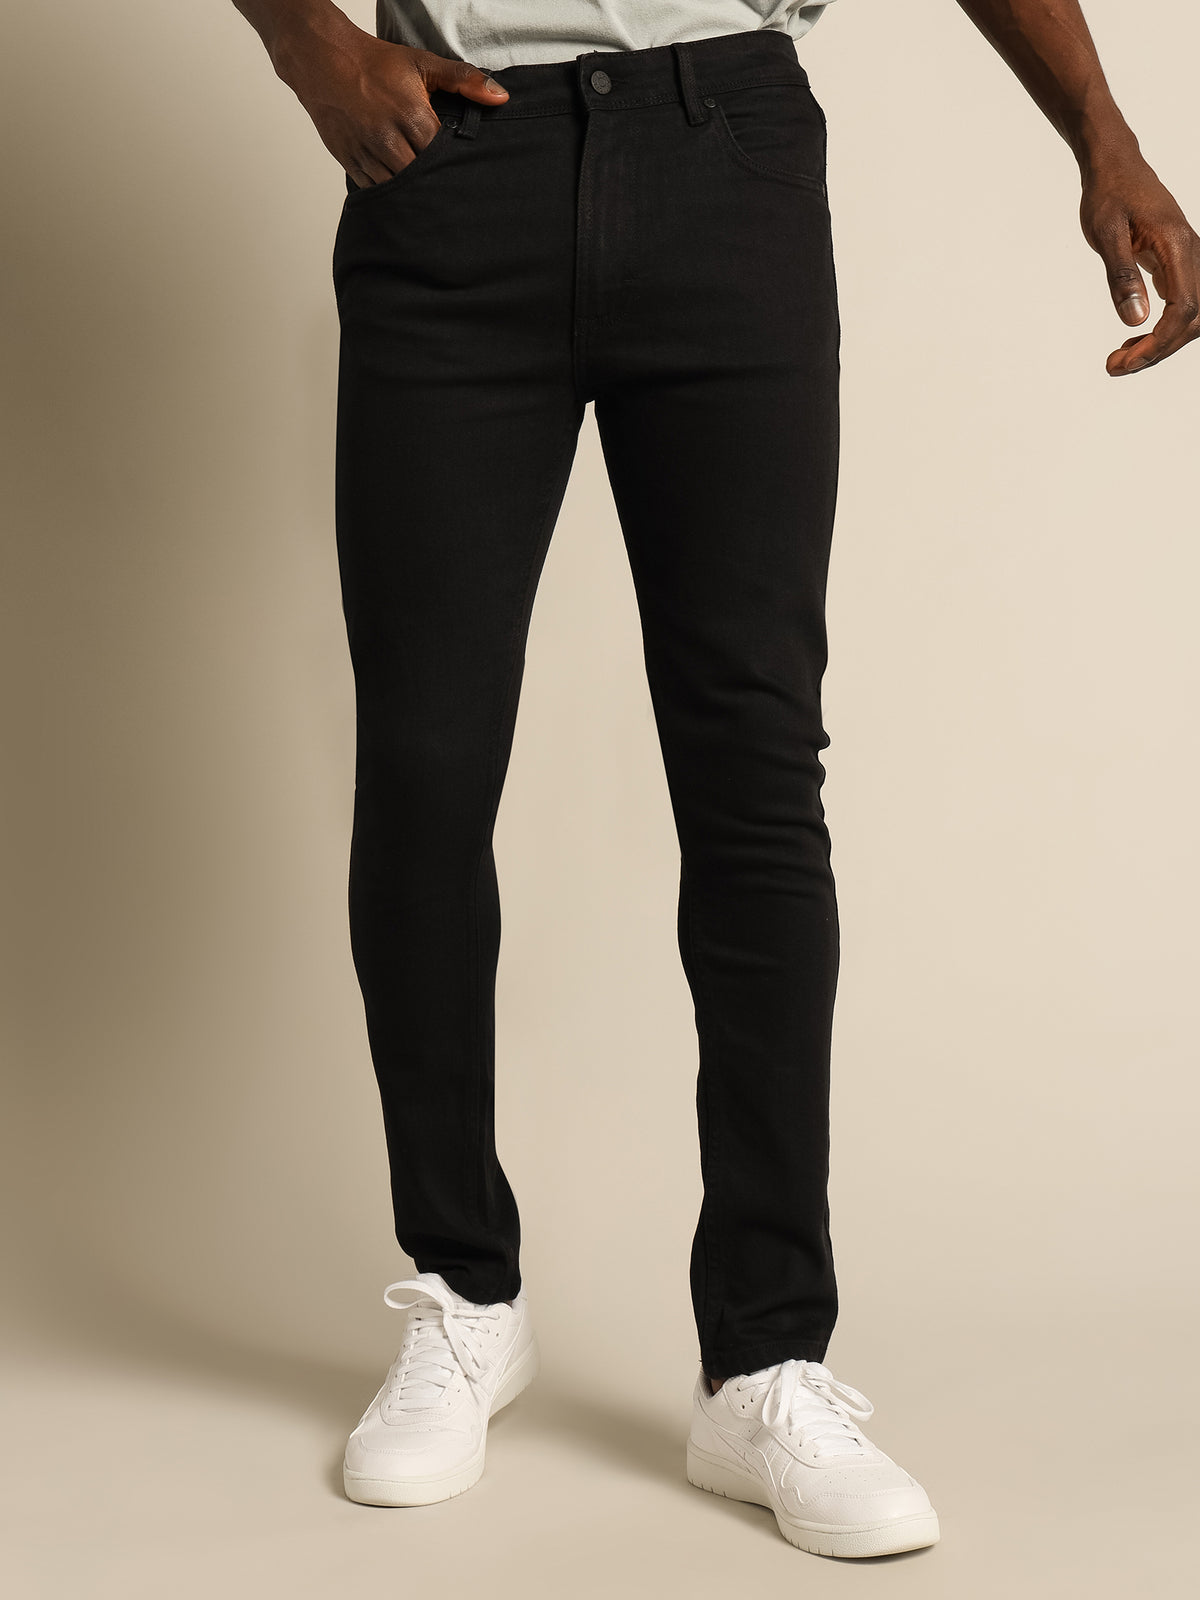 Zane Skinny Jeans in Black